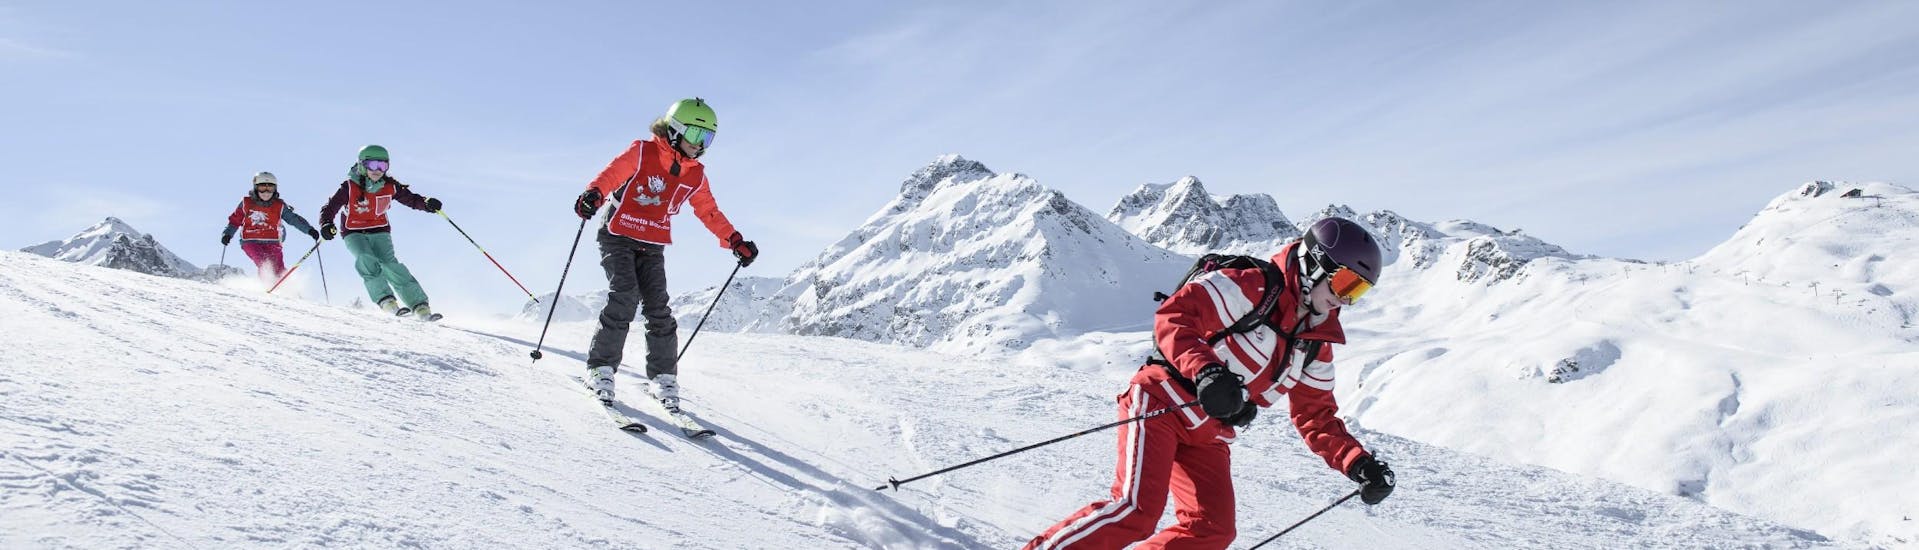 Bei einem Kinder-Skikurs (ab 5 J.) für Fortgeschrittene erkundet eine Gruppe gemeinsam mit einer erfahrenen Skilehrerin der Skischule Schruns die Pisten des Skigebiets Silvretta Montafon.